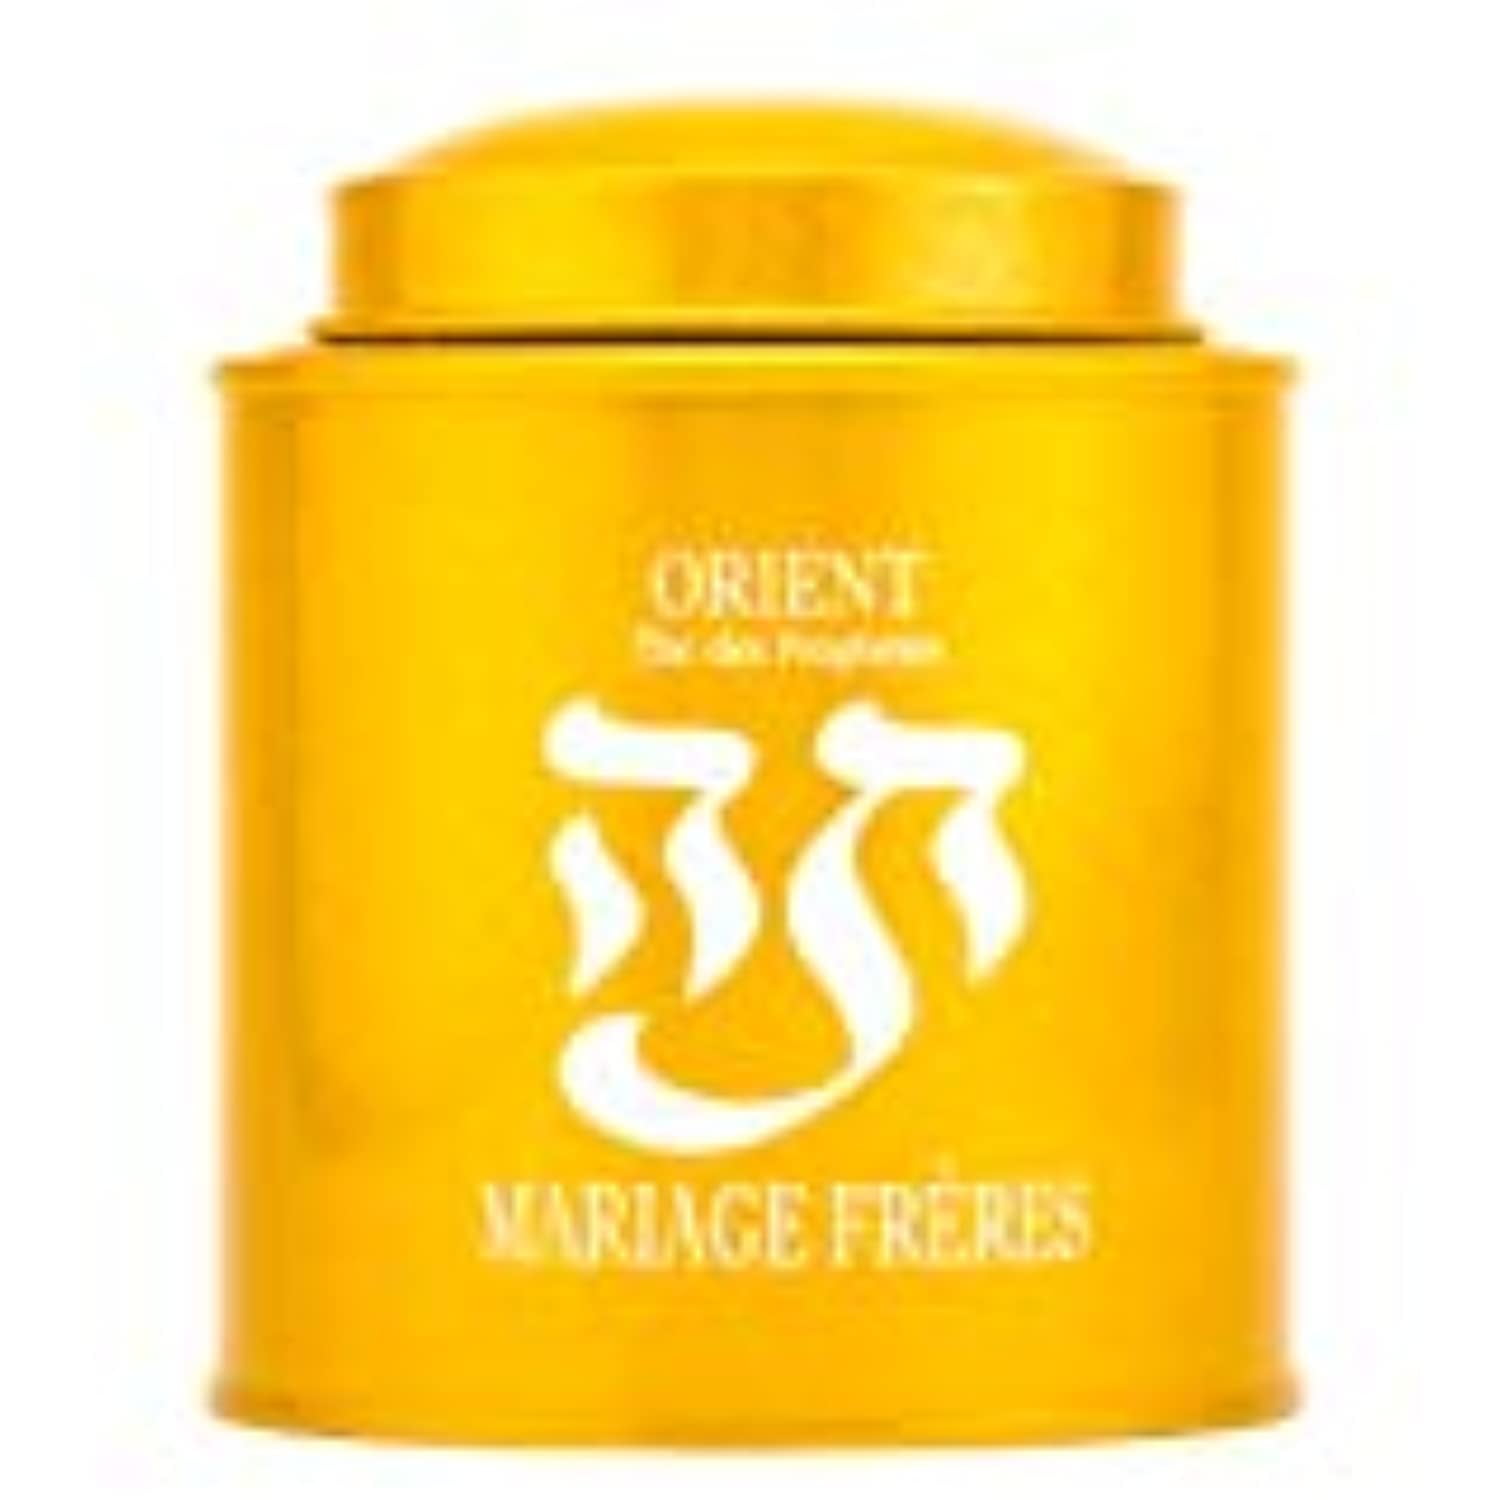 Mariage Freres Orient The Des Prophetes Tin 100G 